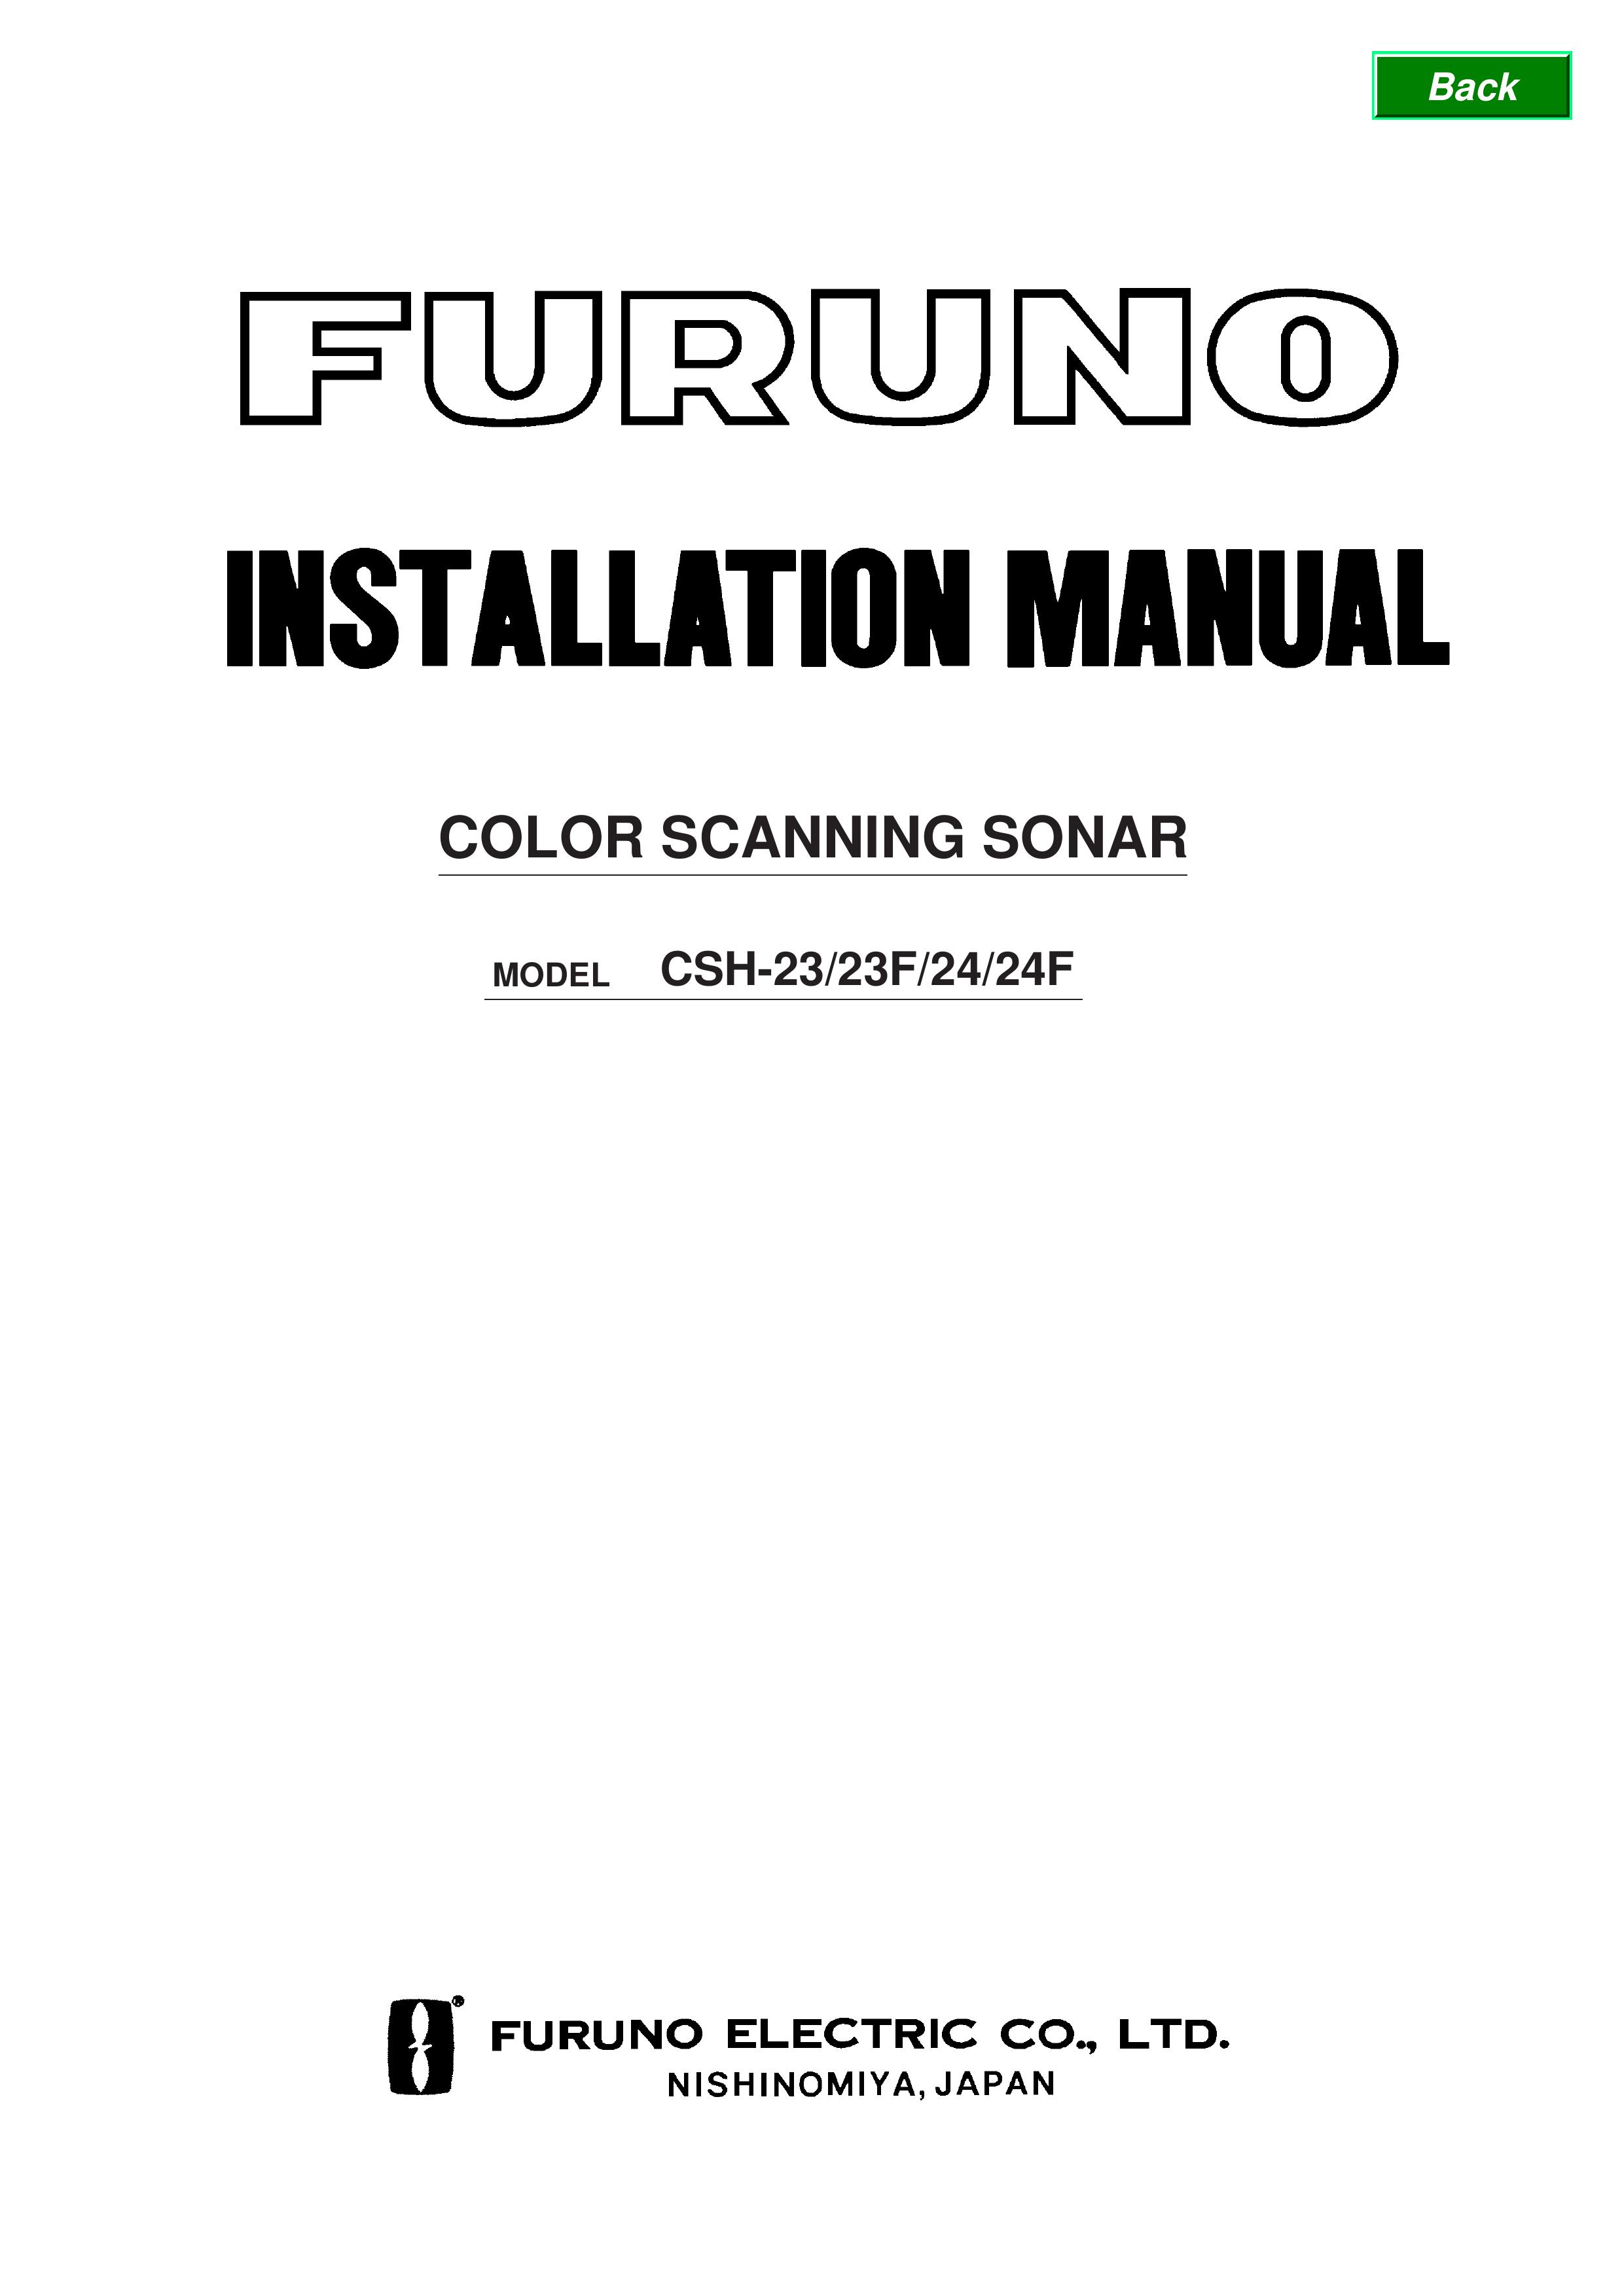 Furuno CSH-24 SONAR User Manual